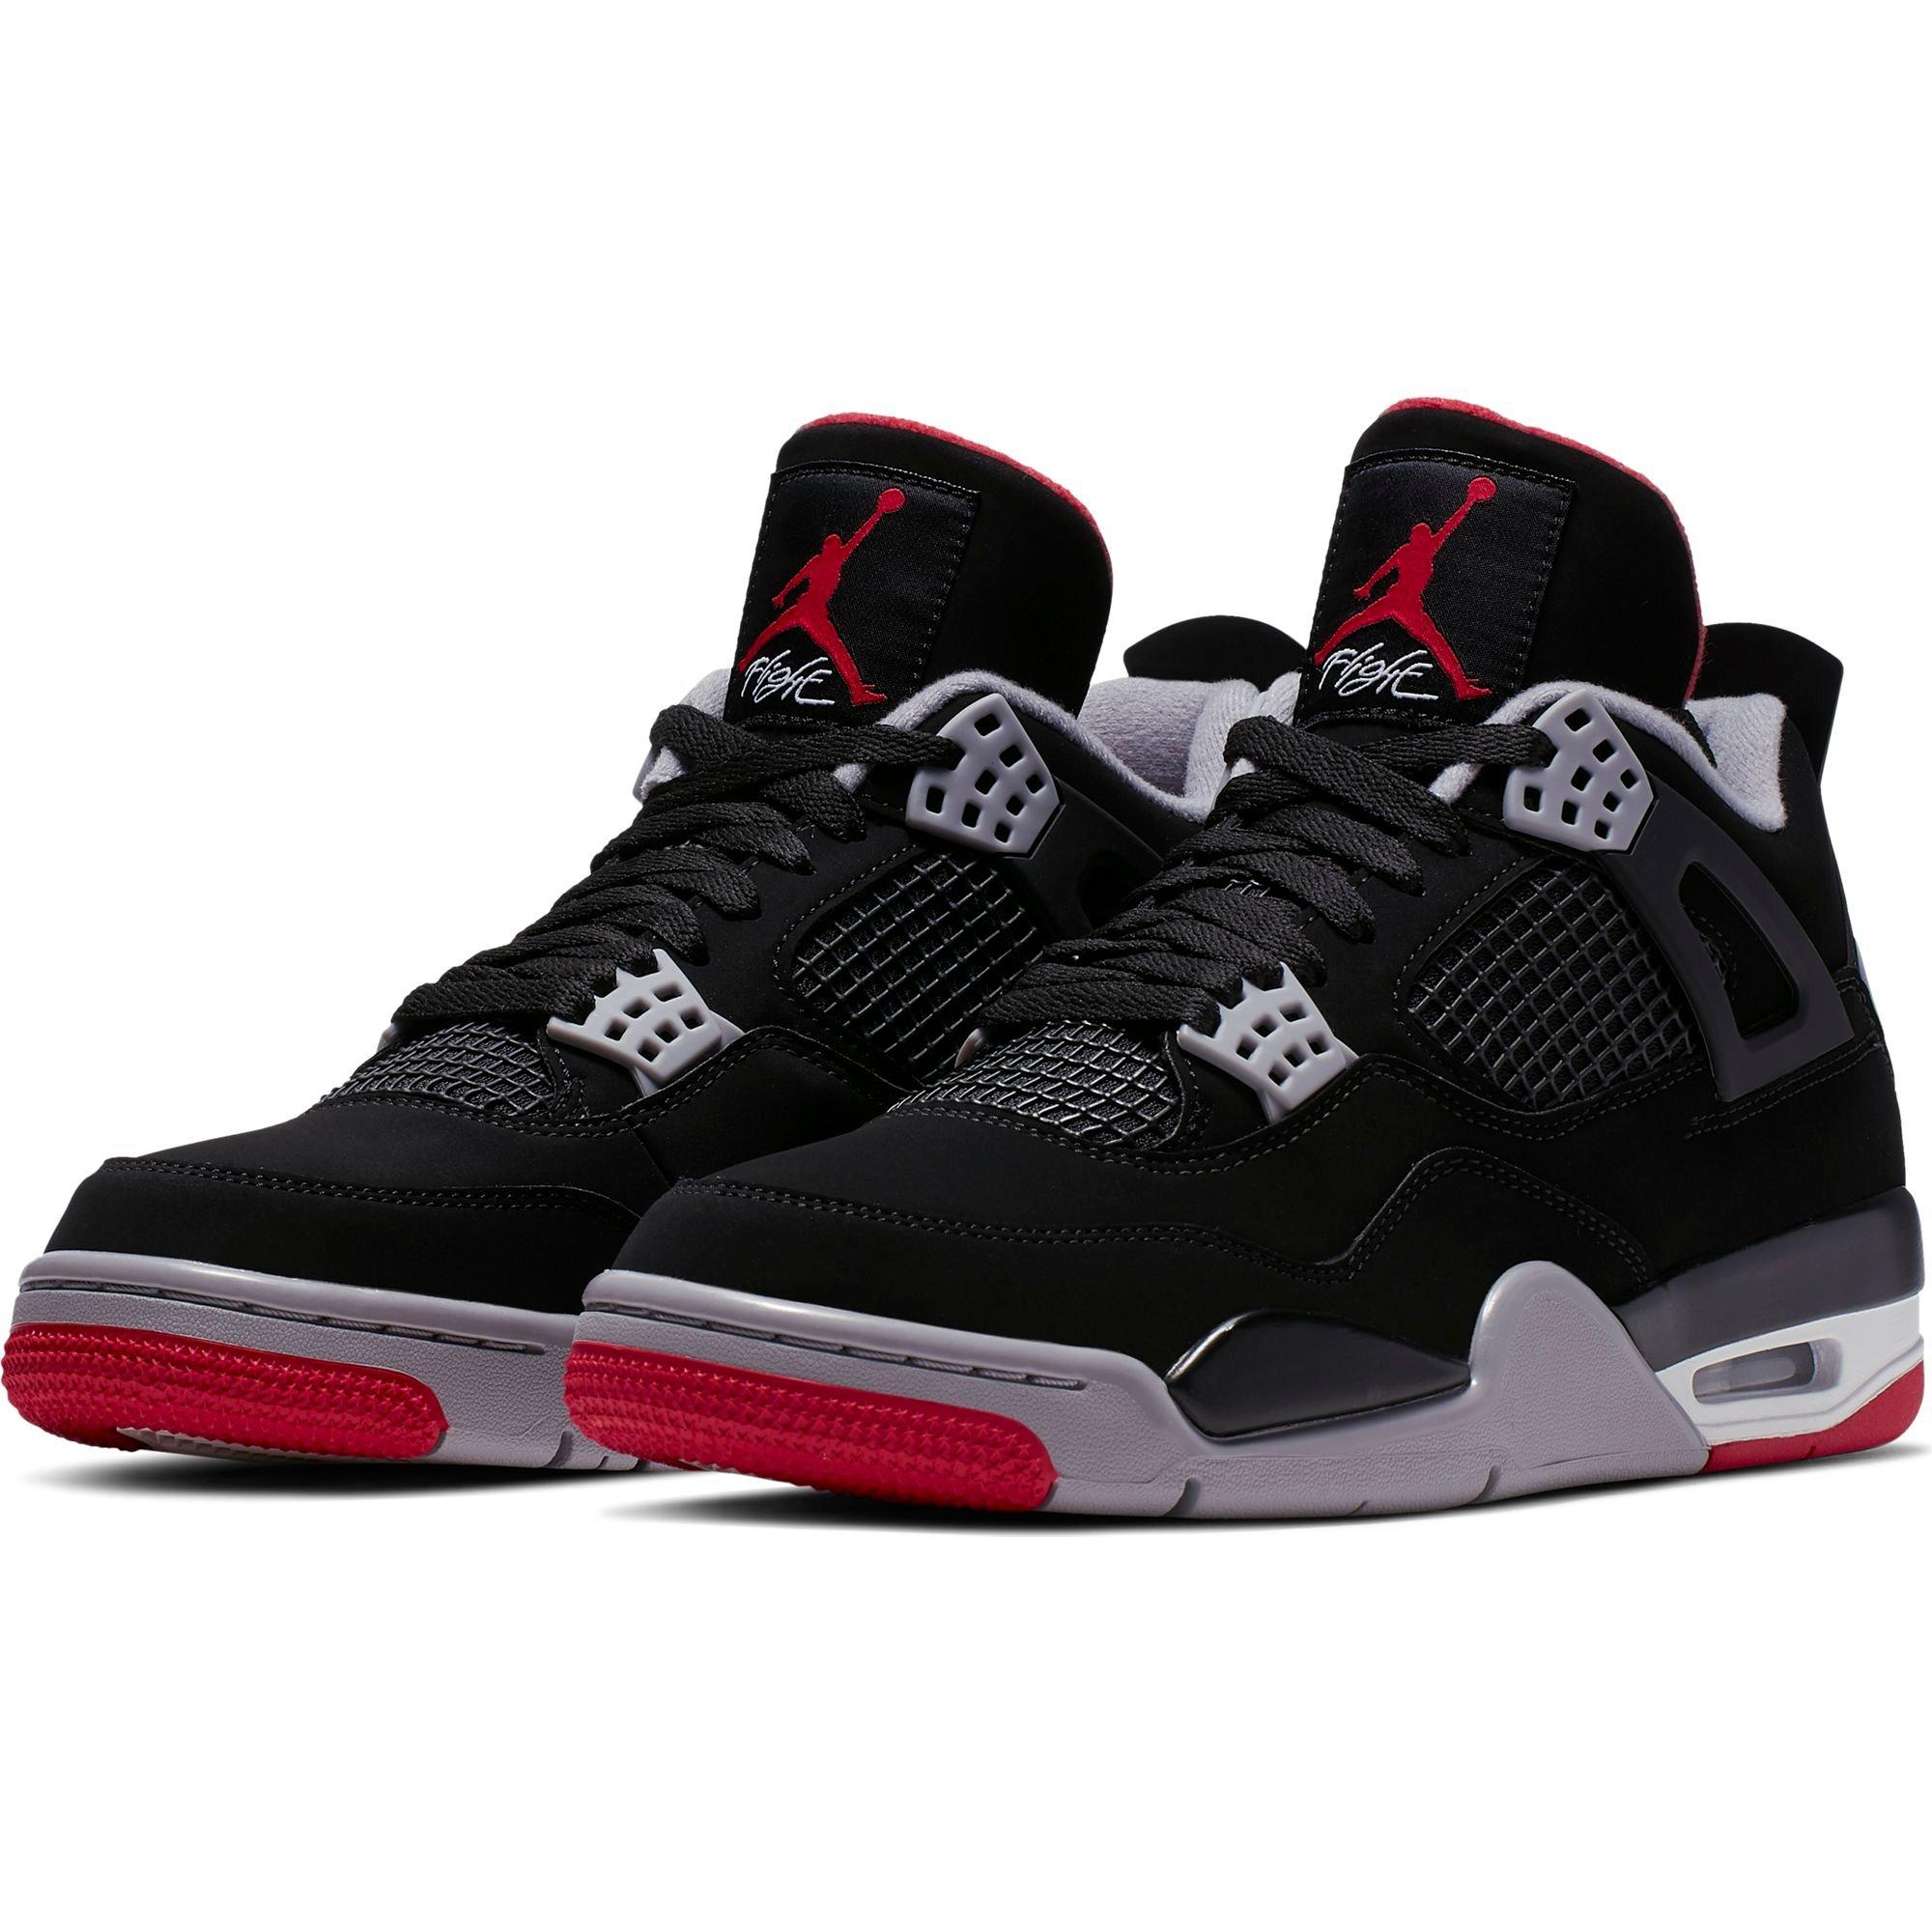 Sneaker Release – Air Jordan Retro 4 OG 